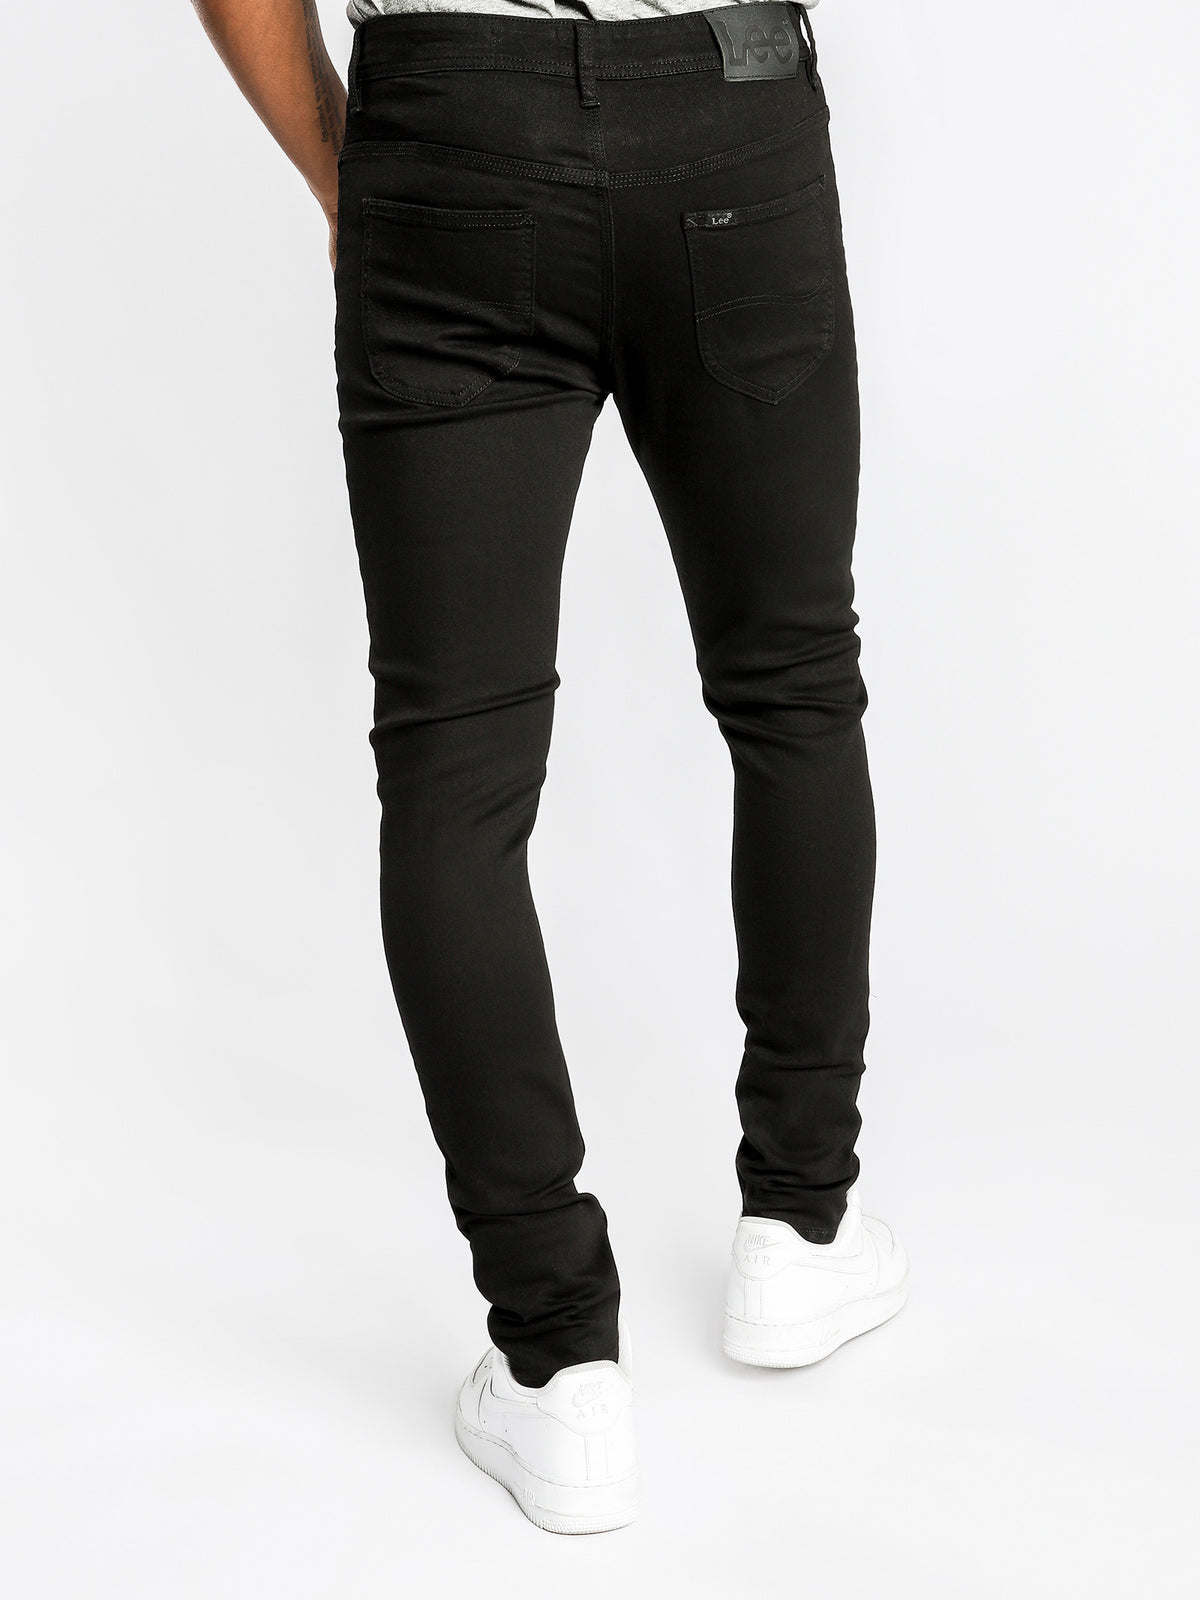 Z1 Jeans in True Black Denim